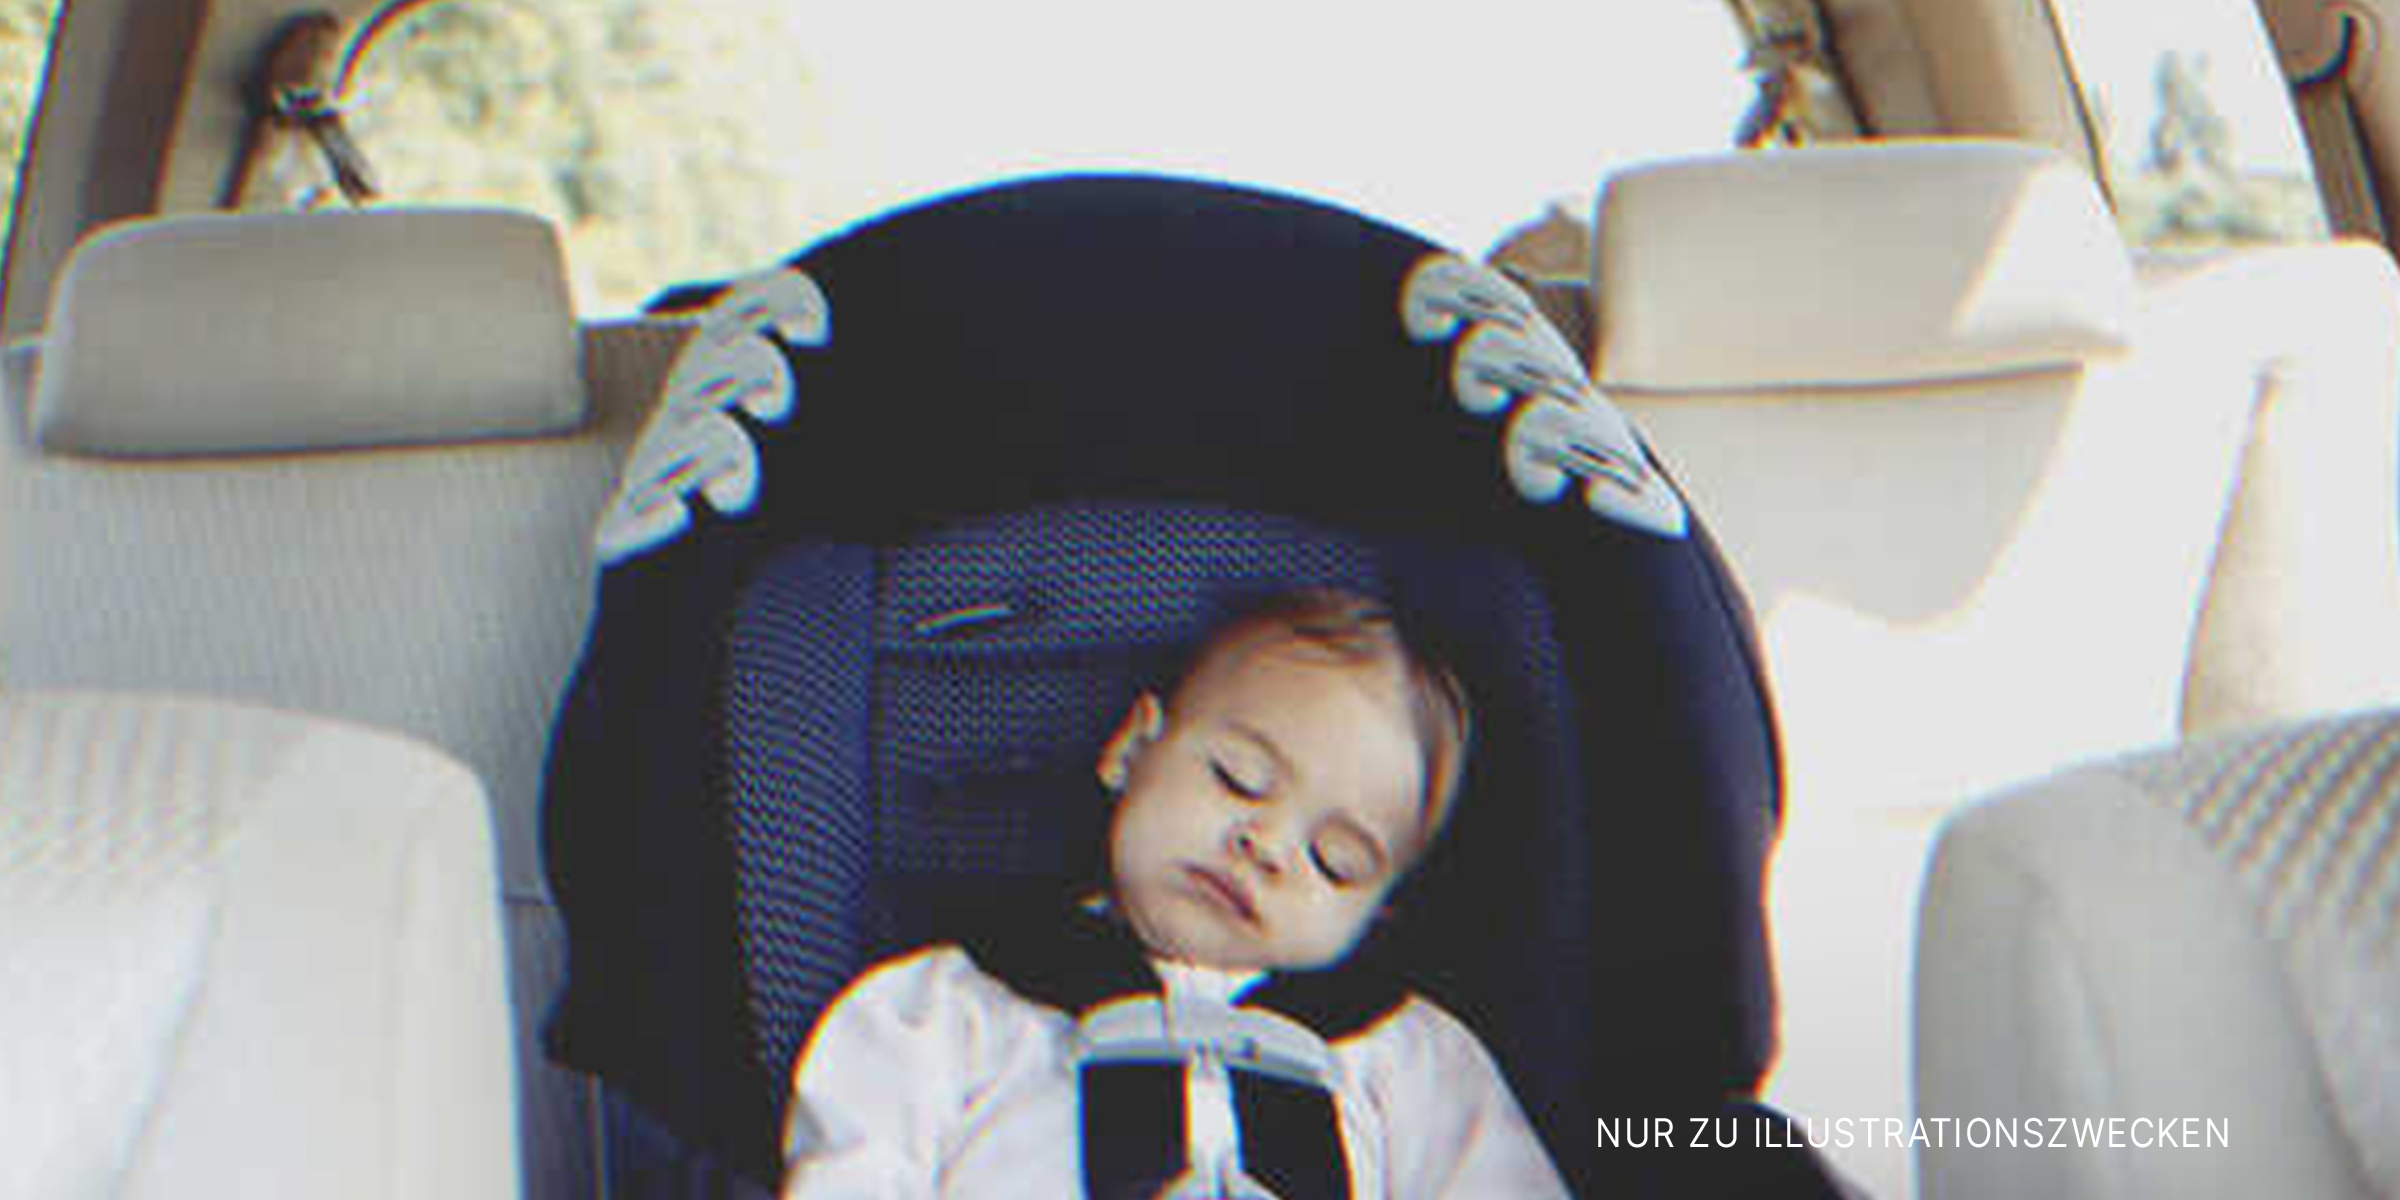 Baby schläft fest auf dem Rücksitz eines Autos | Quelle: Getty Images